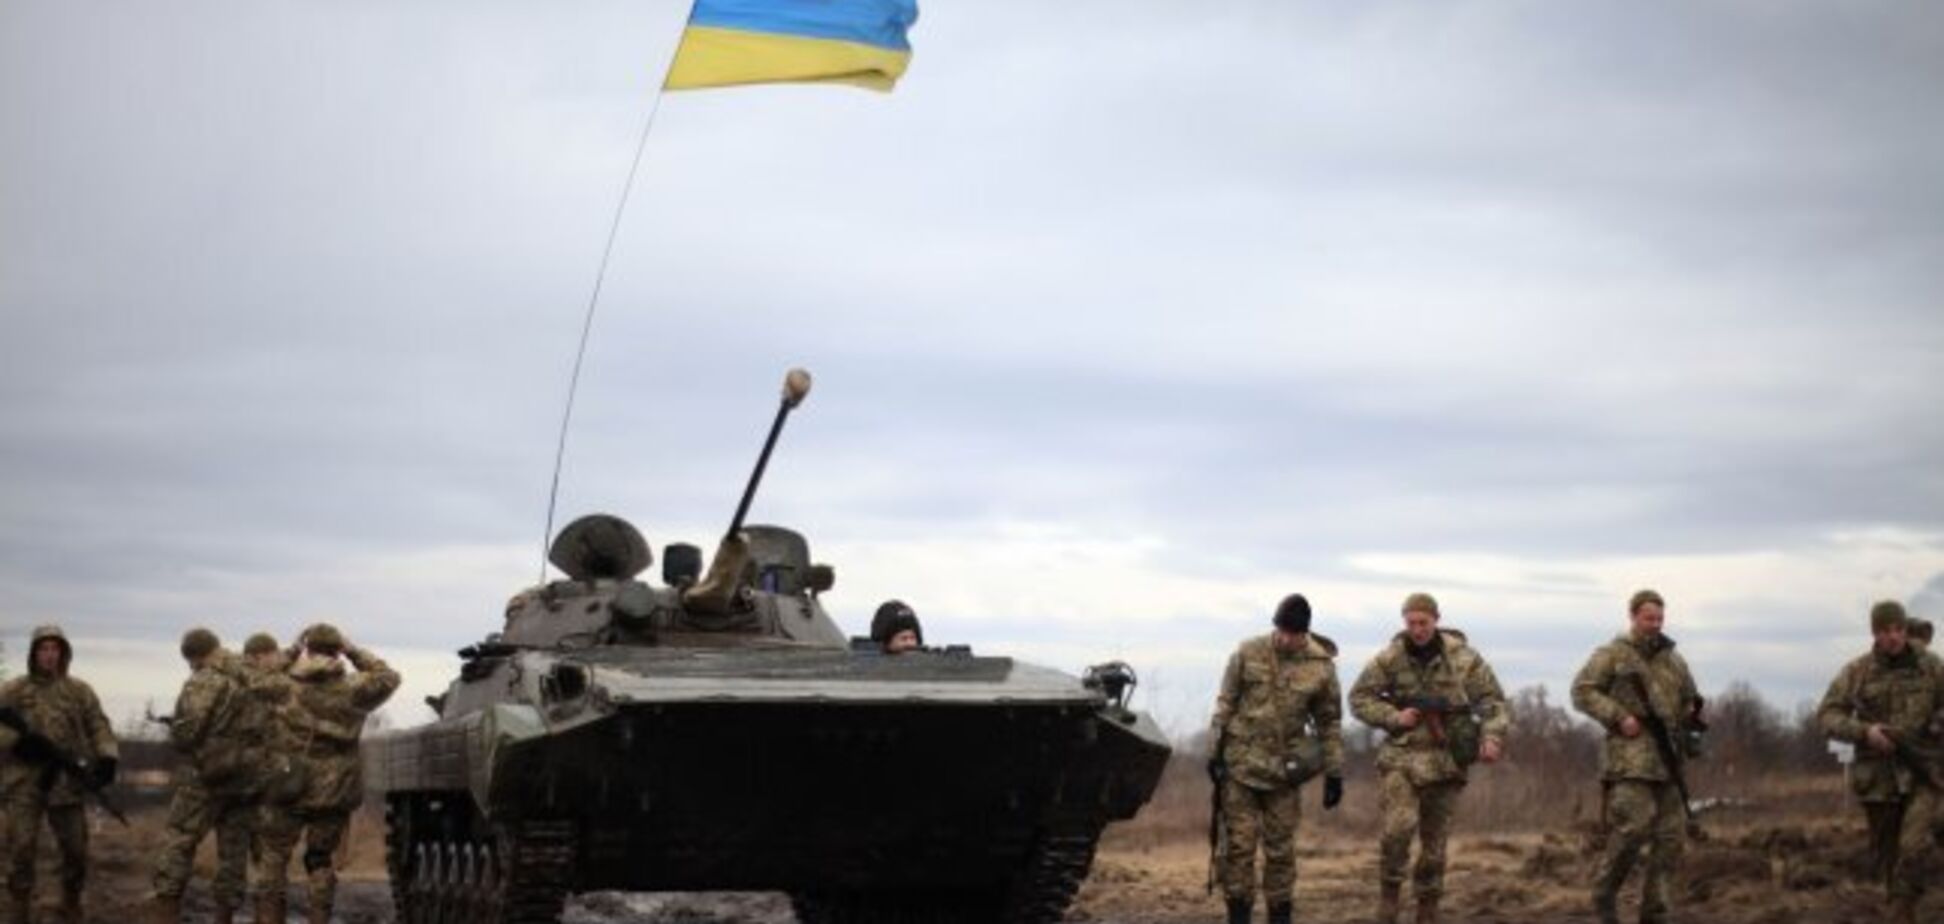   Минус шесть: ВСУ нанесли сокрушительный удар по террористам на Донбассе